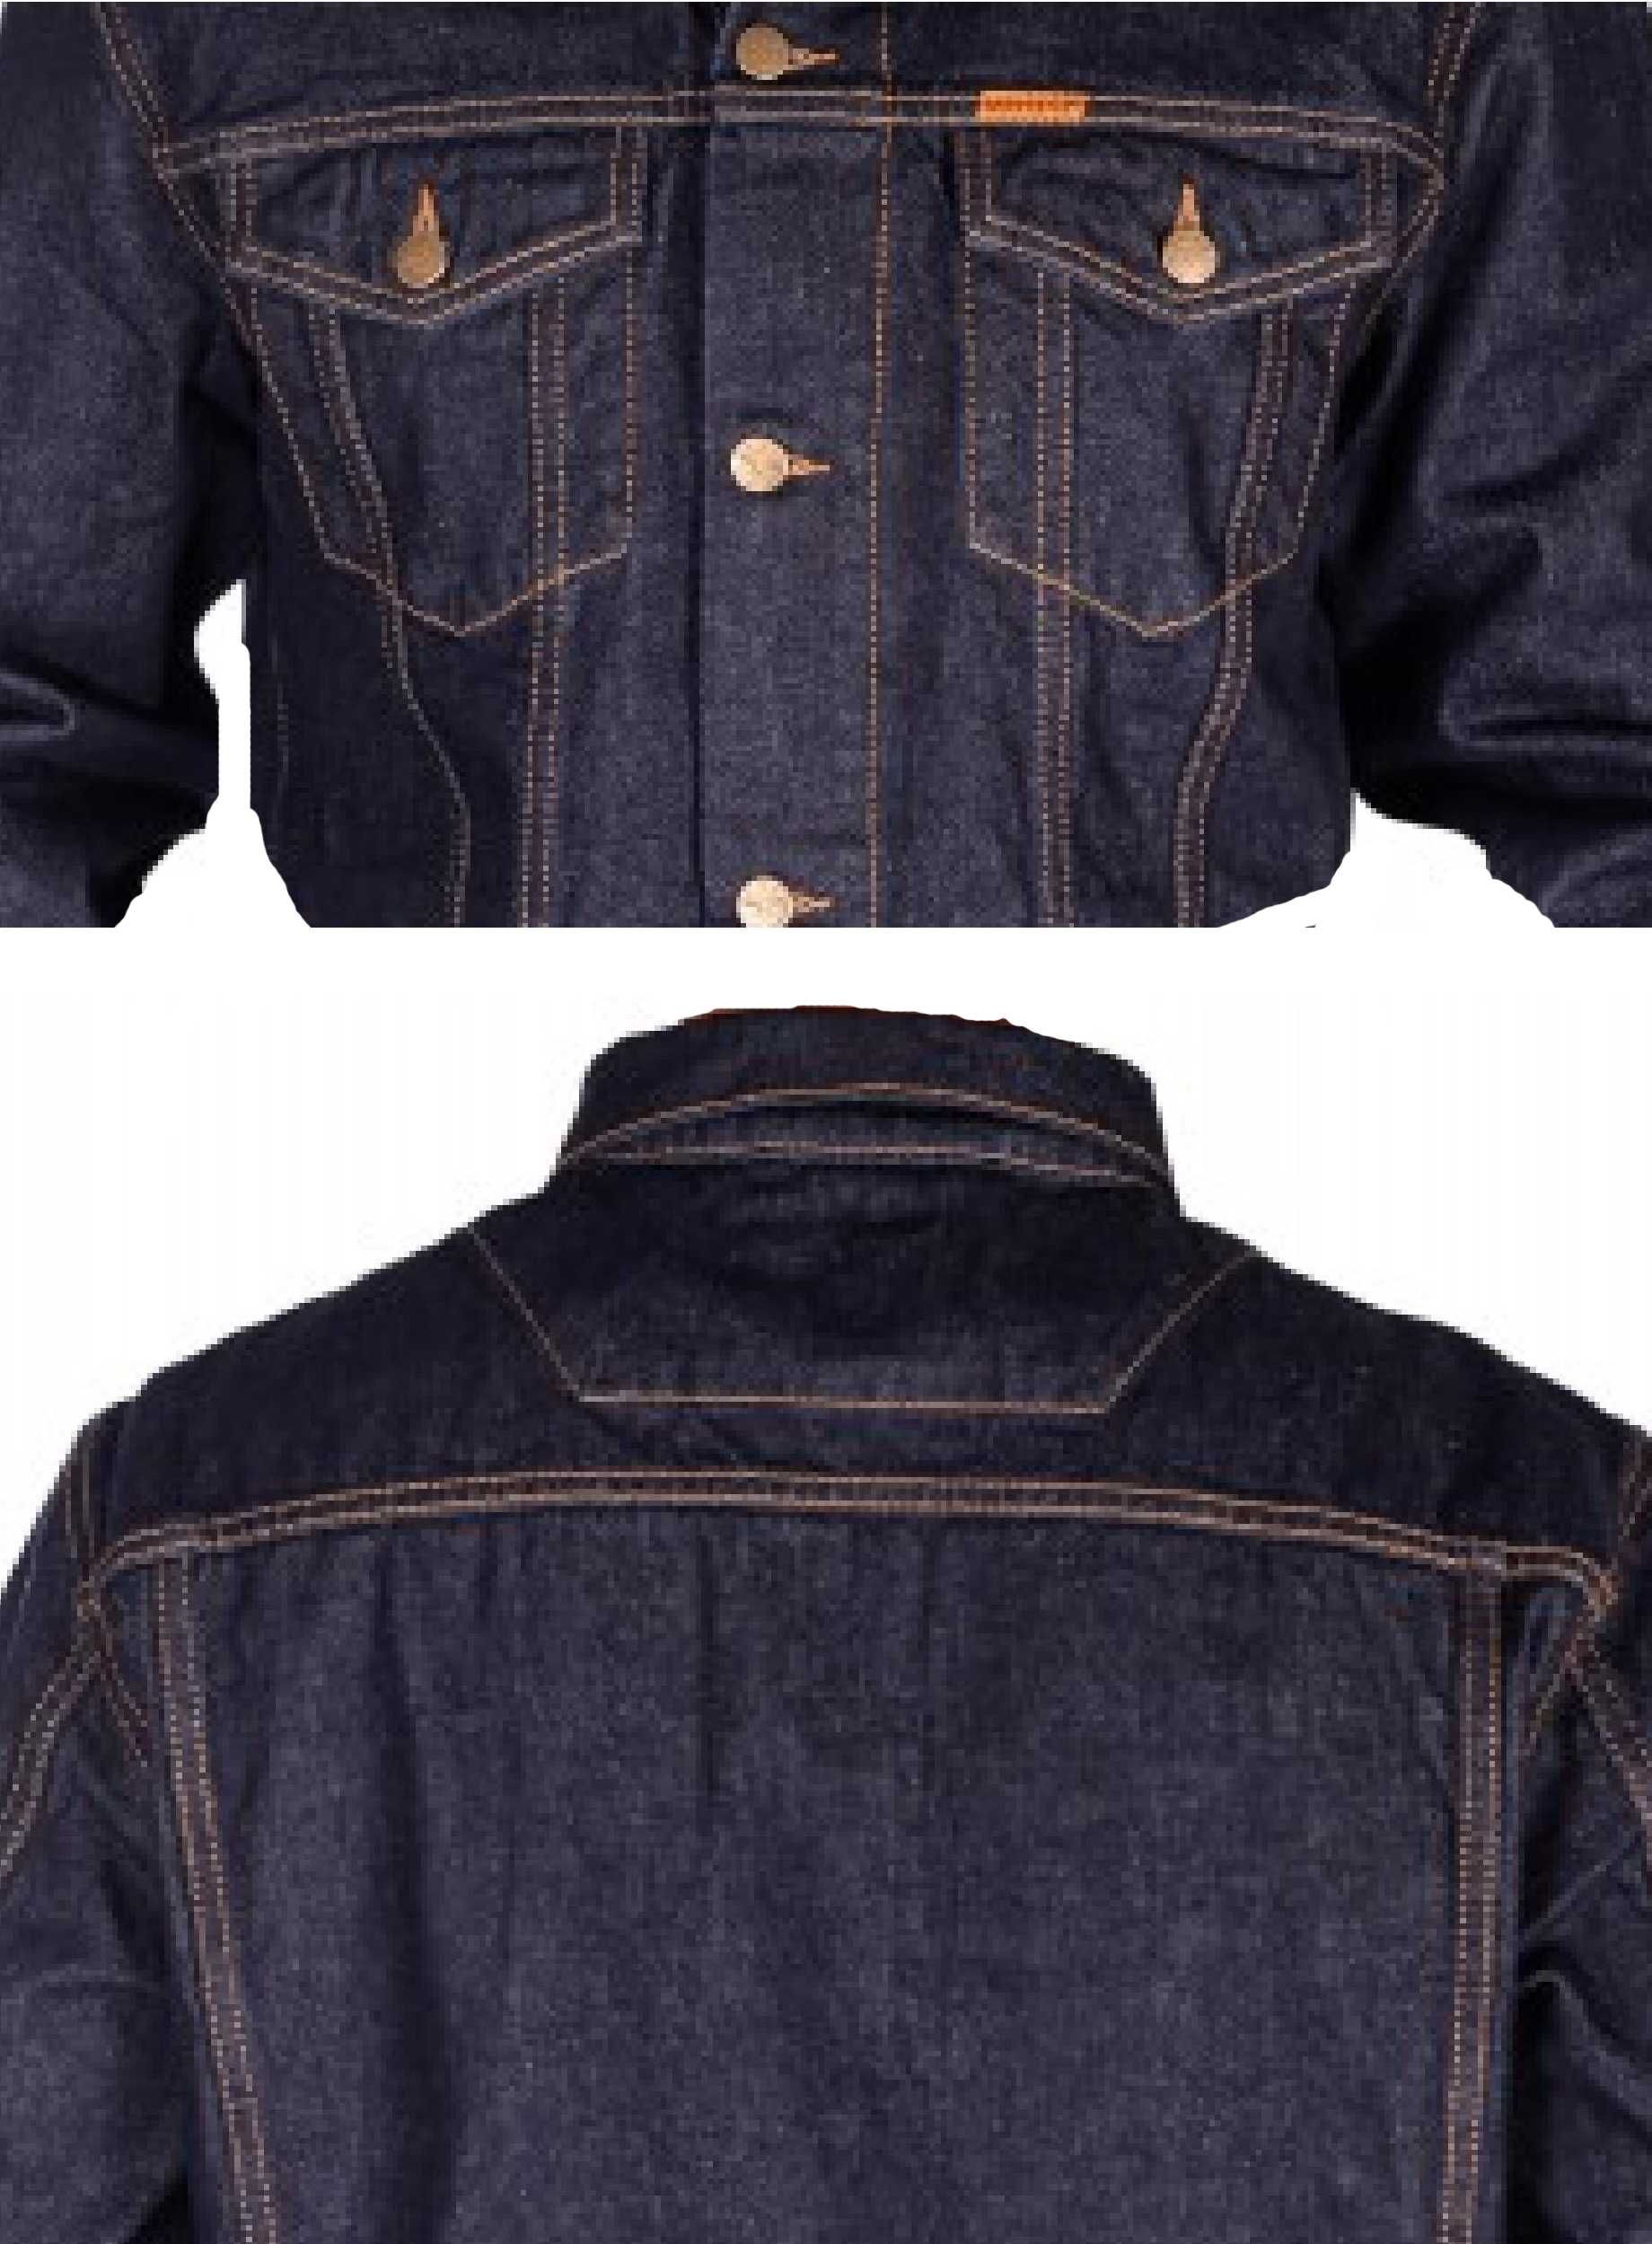 Джинсовая куртка "Montana 1026", деним трёх оттенков